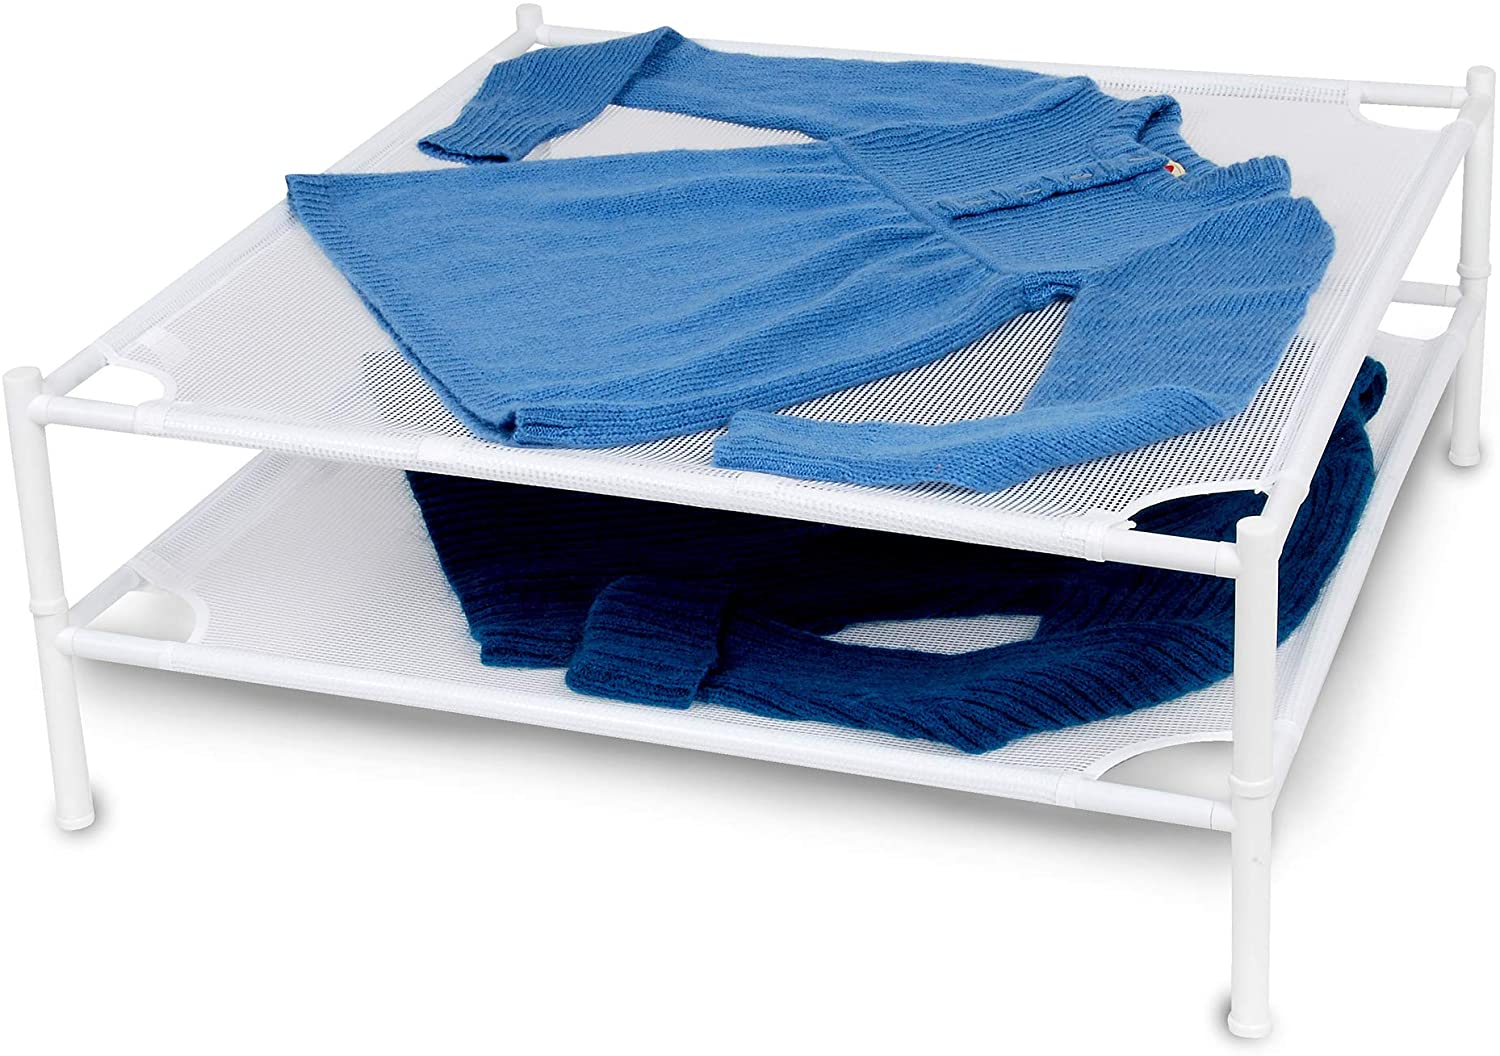 Stackable Sweater Dryer Rack with 4 Legs - Smart Design® 2